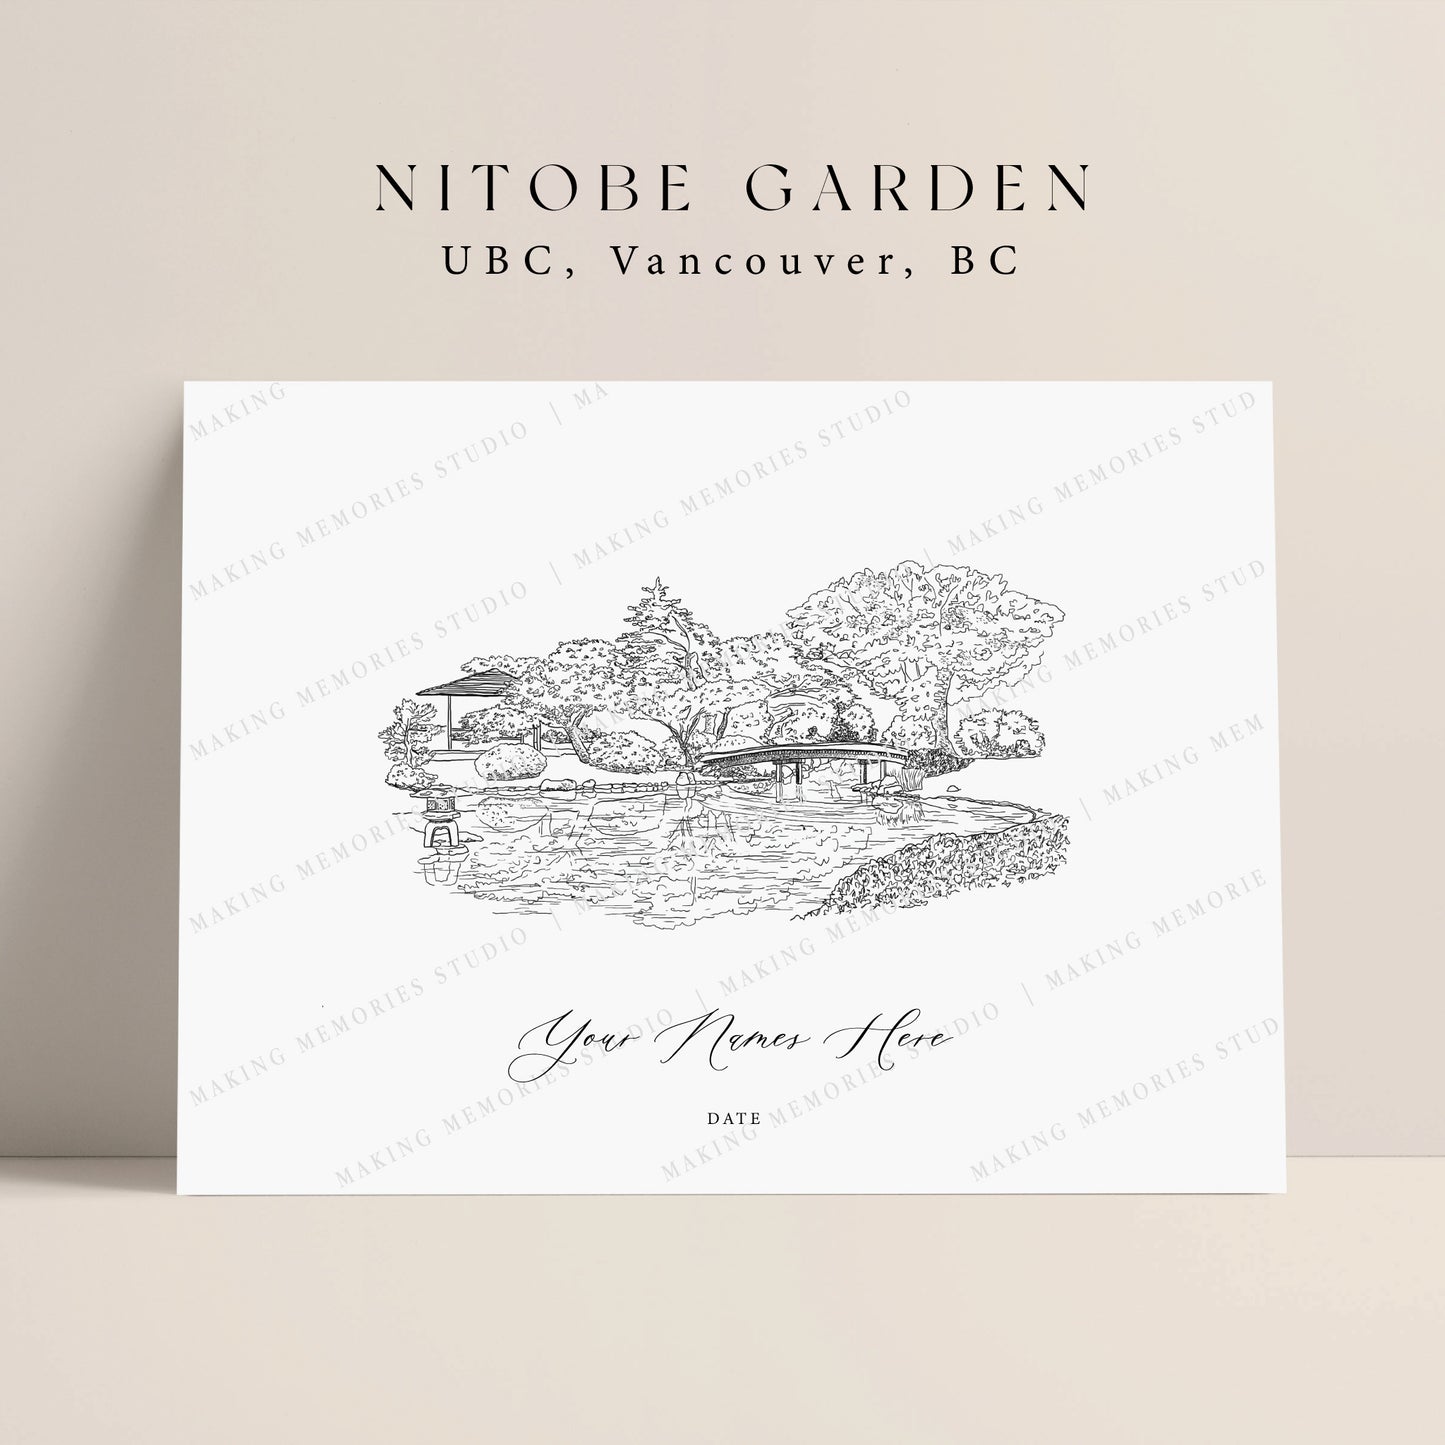 Nitobe Garden - UBC